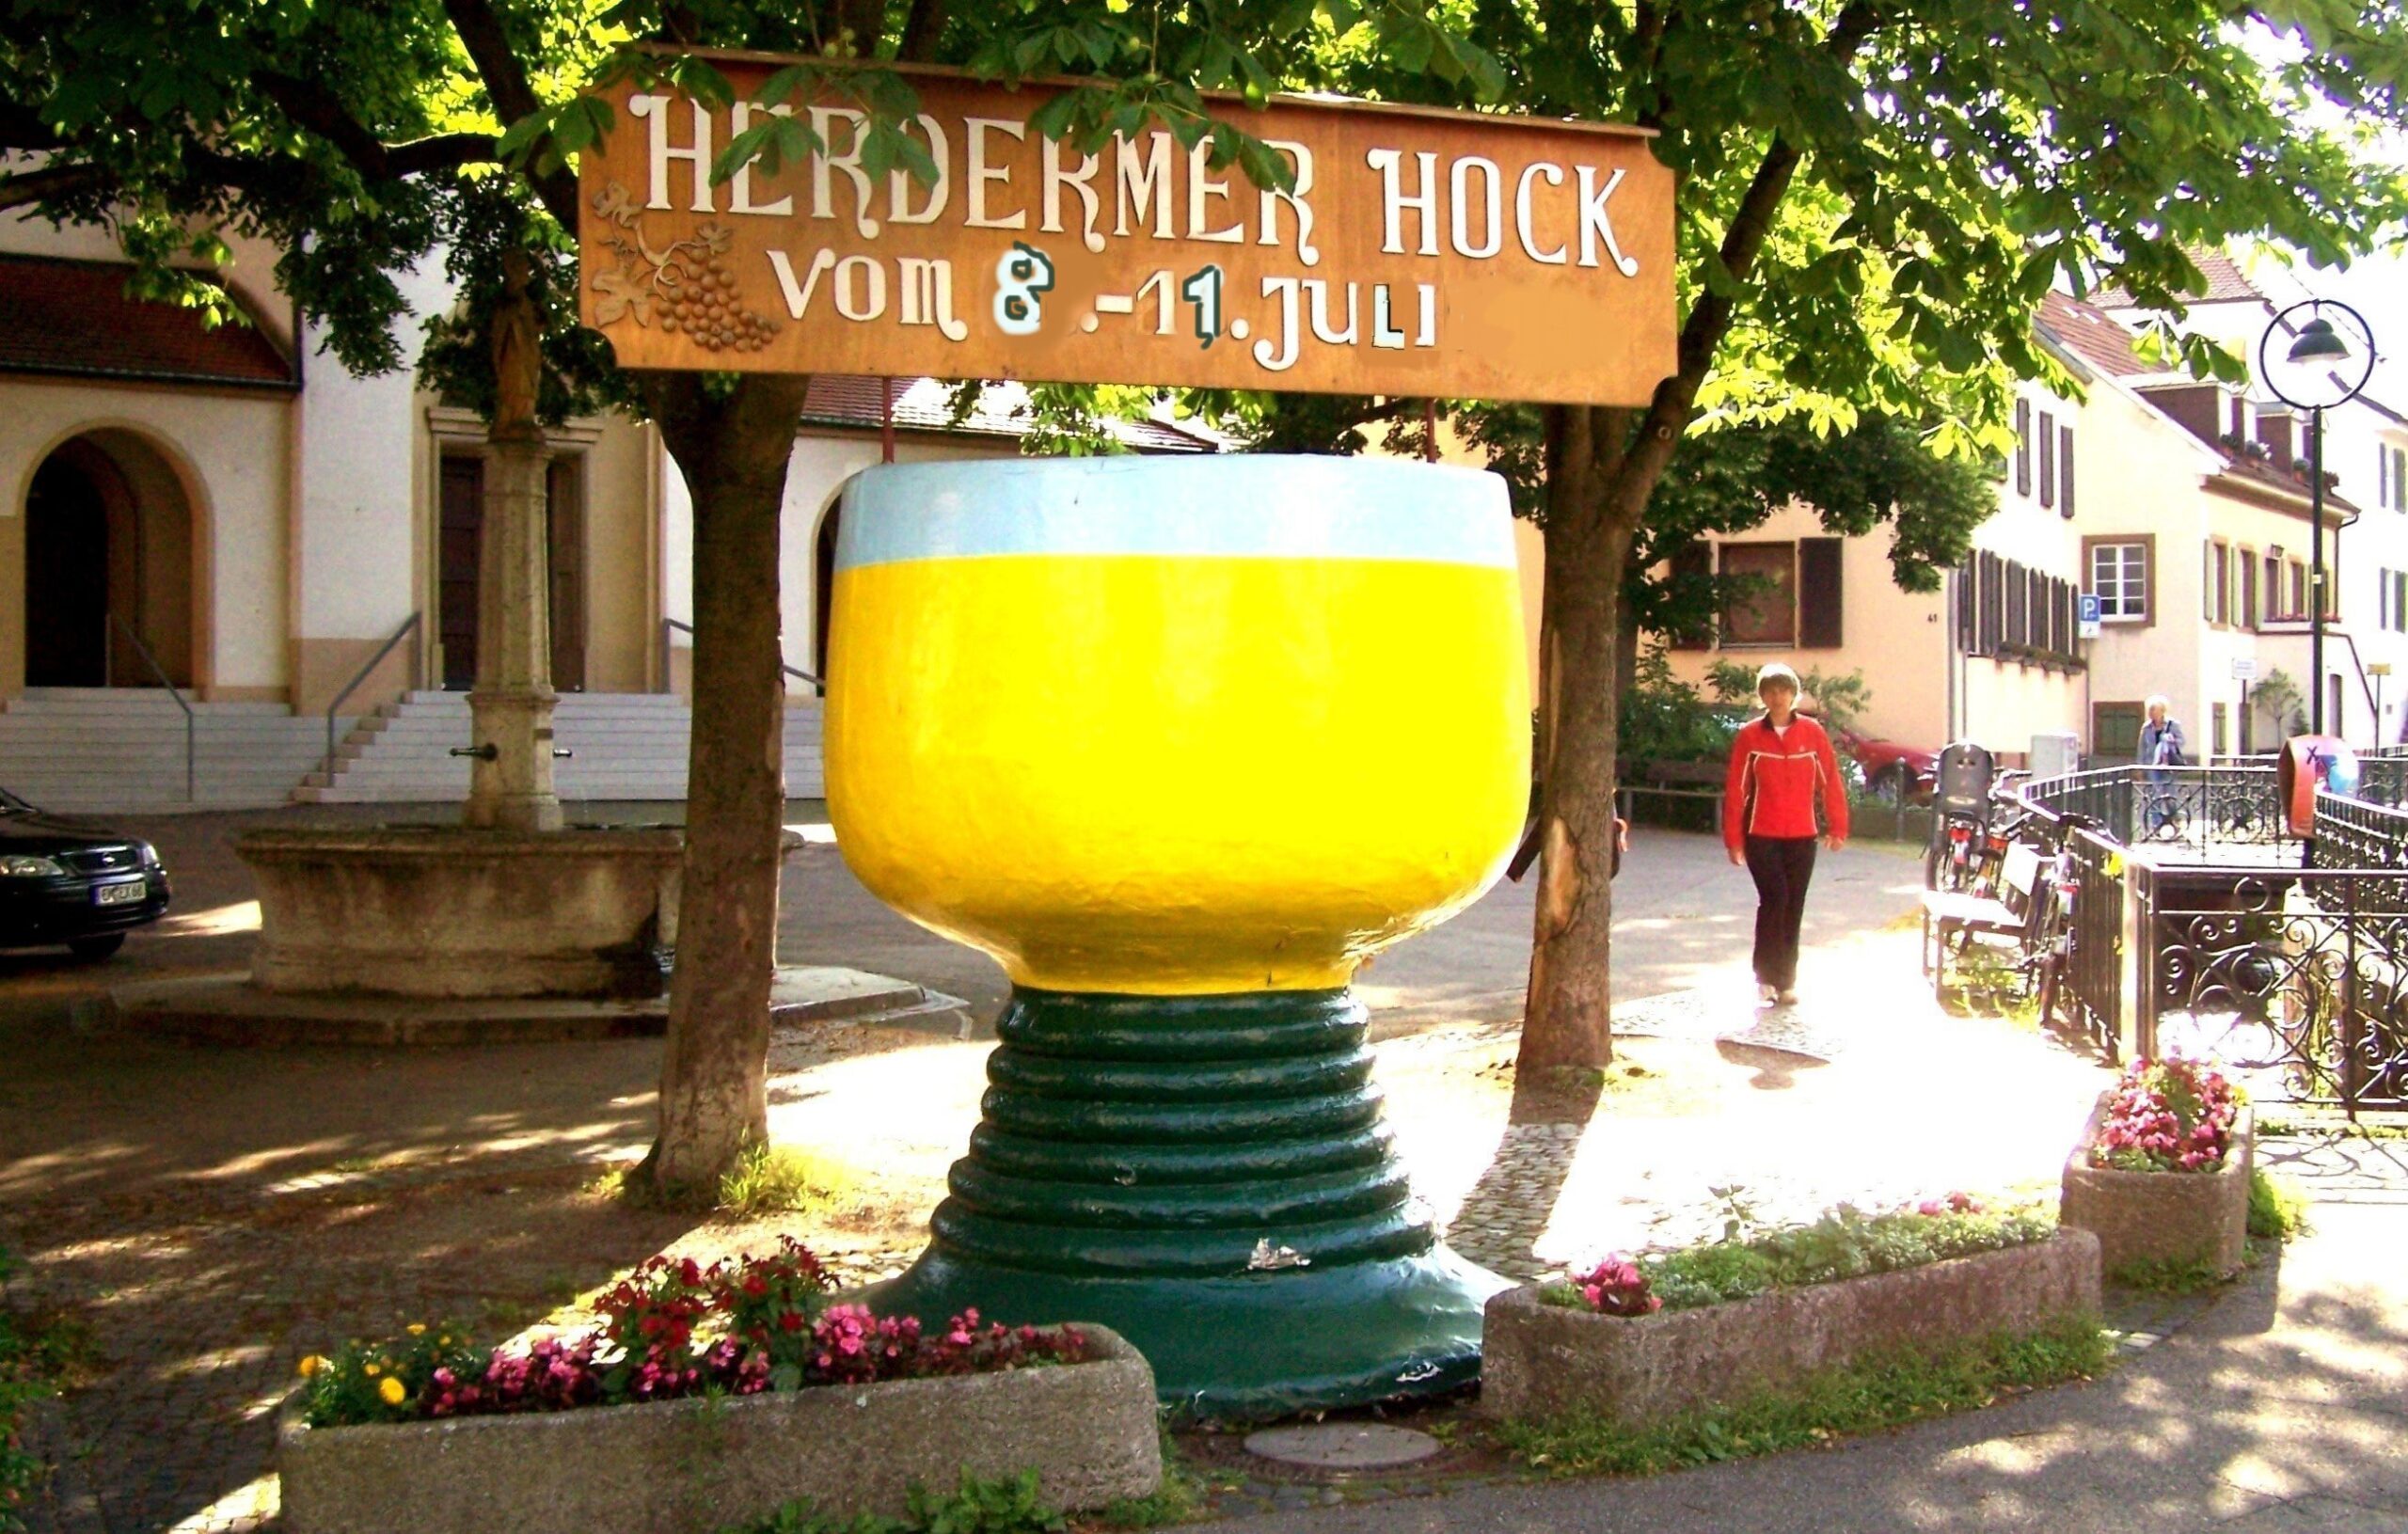 Herdermer Hock